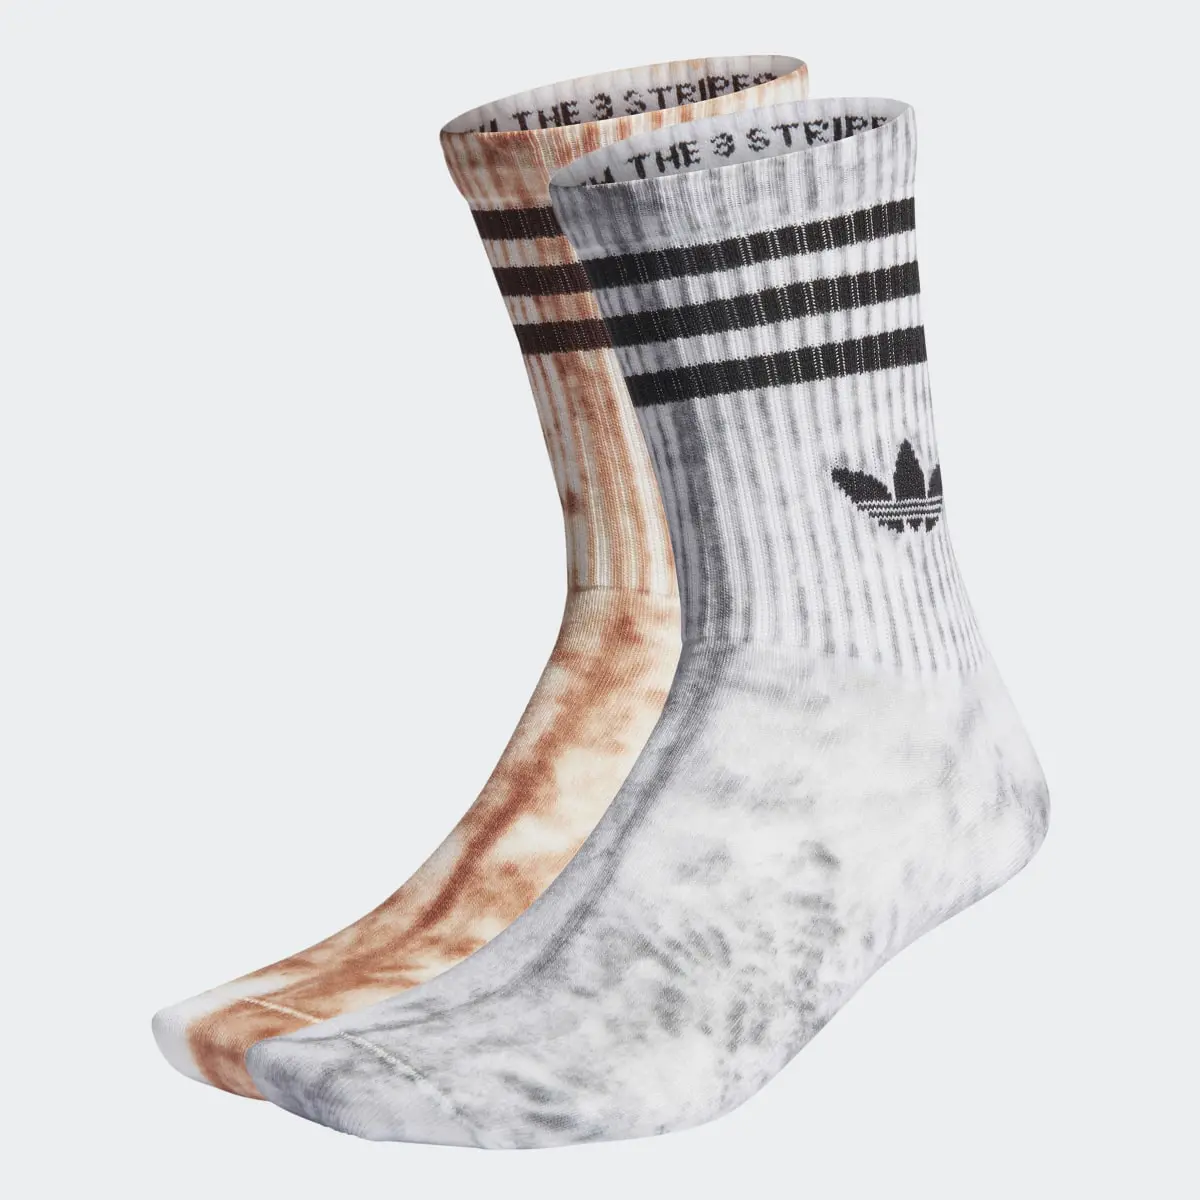 Adidas Tie Dye Socken, 2 Paar. 2